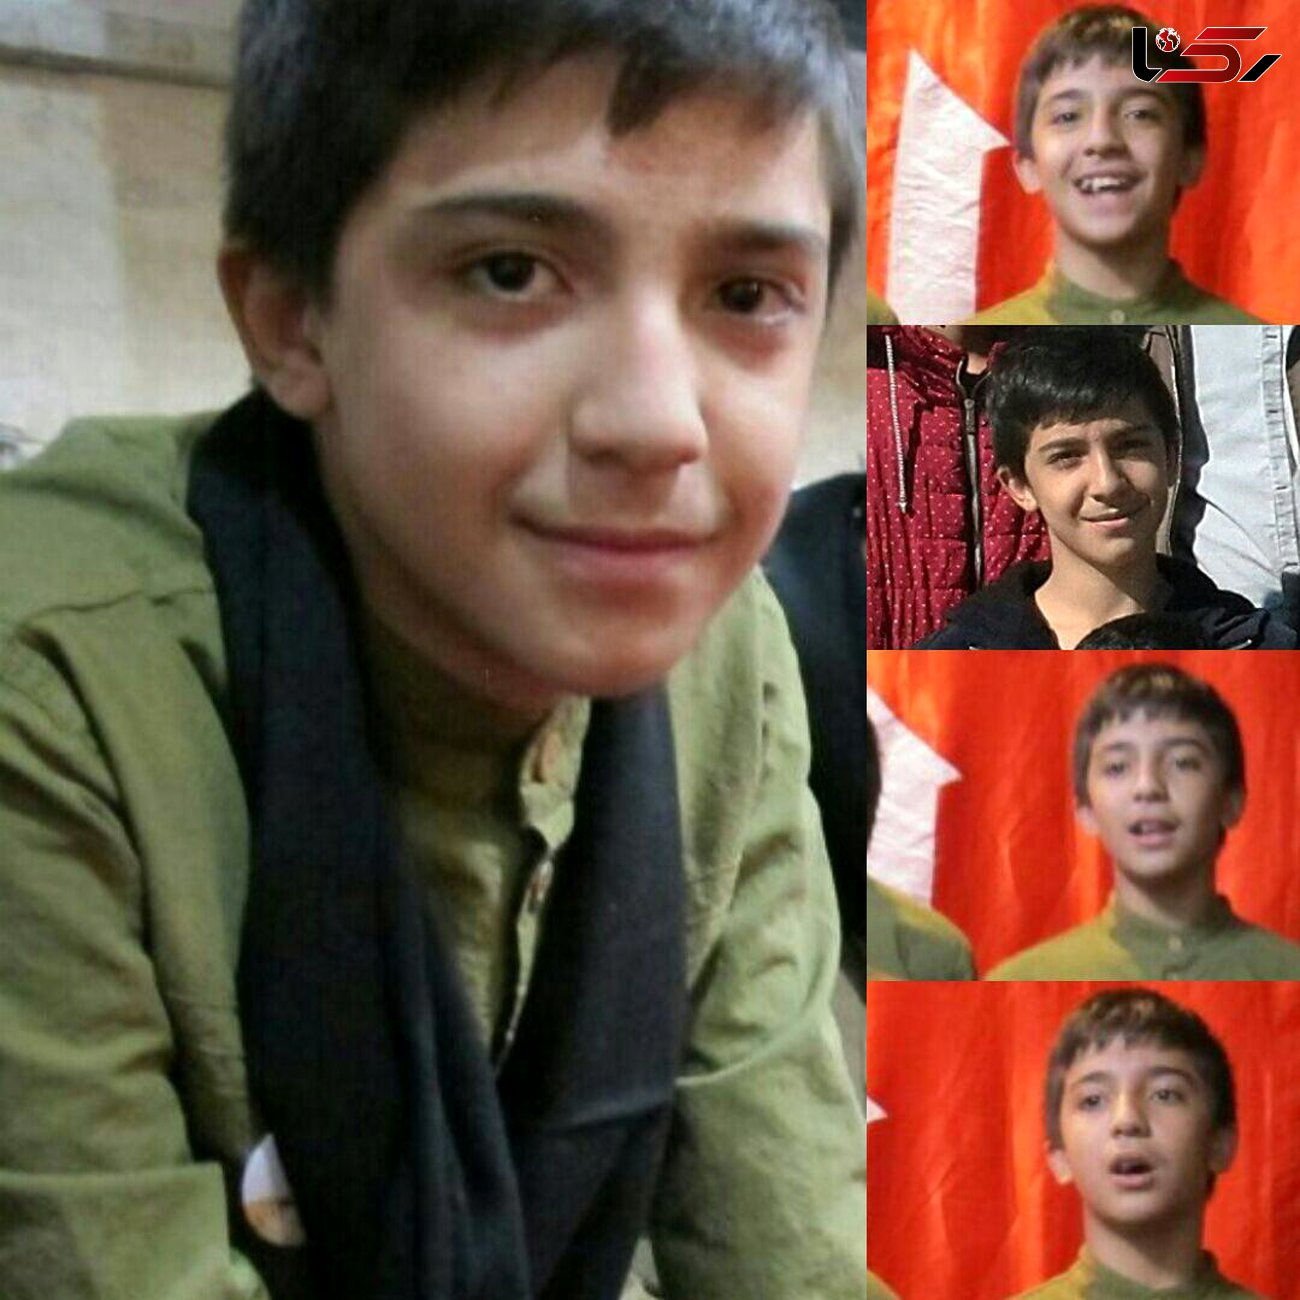 جزئیات مرگ امیر حسین 14 ساله نخستین قربانی چهارشنبه سوری تهران / دوست او با انگشت قظع شده دستگیر شده است+عکس